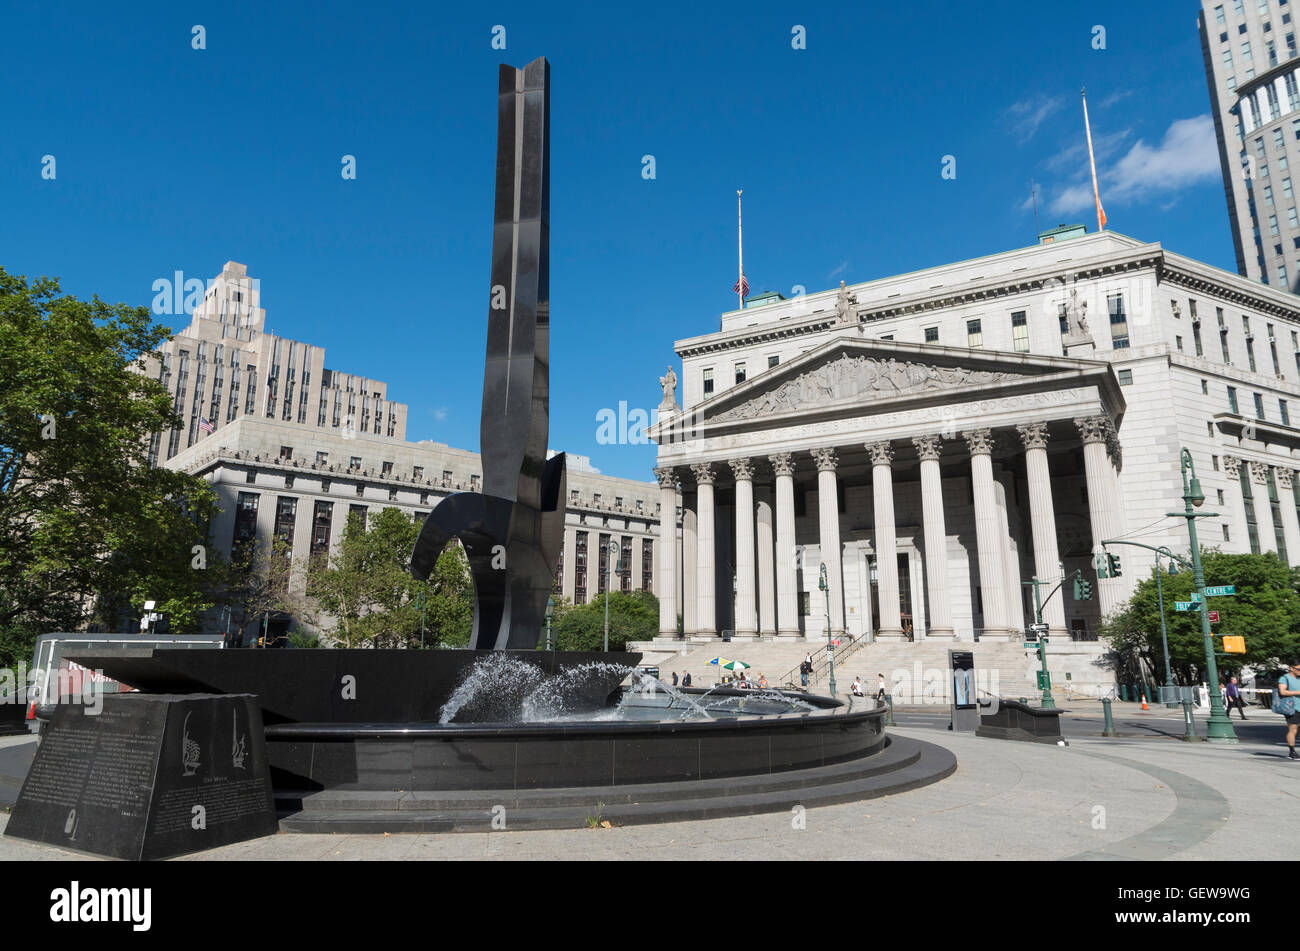 Avis de Foley Square, New York, avec des sculptures de granit noir par Lorenzo le rythme et l'Édifice de la Cour suprême Banque D'Images